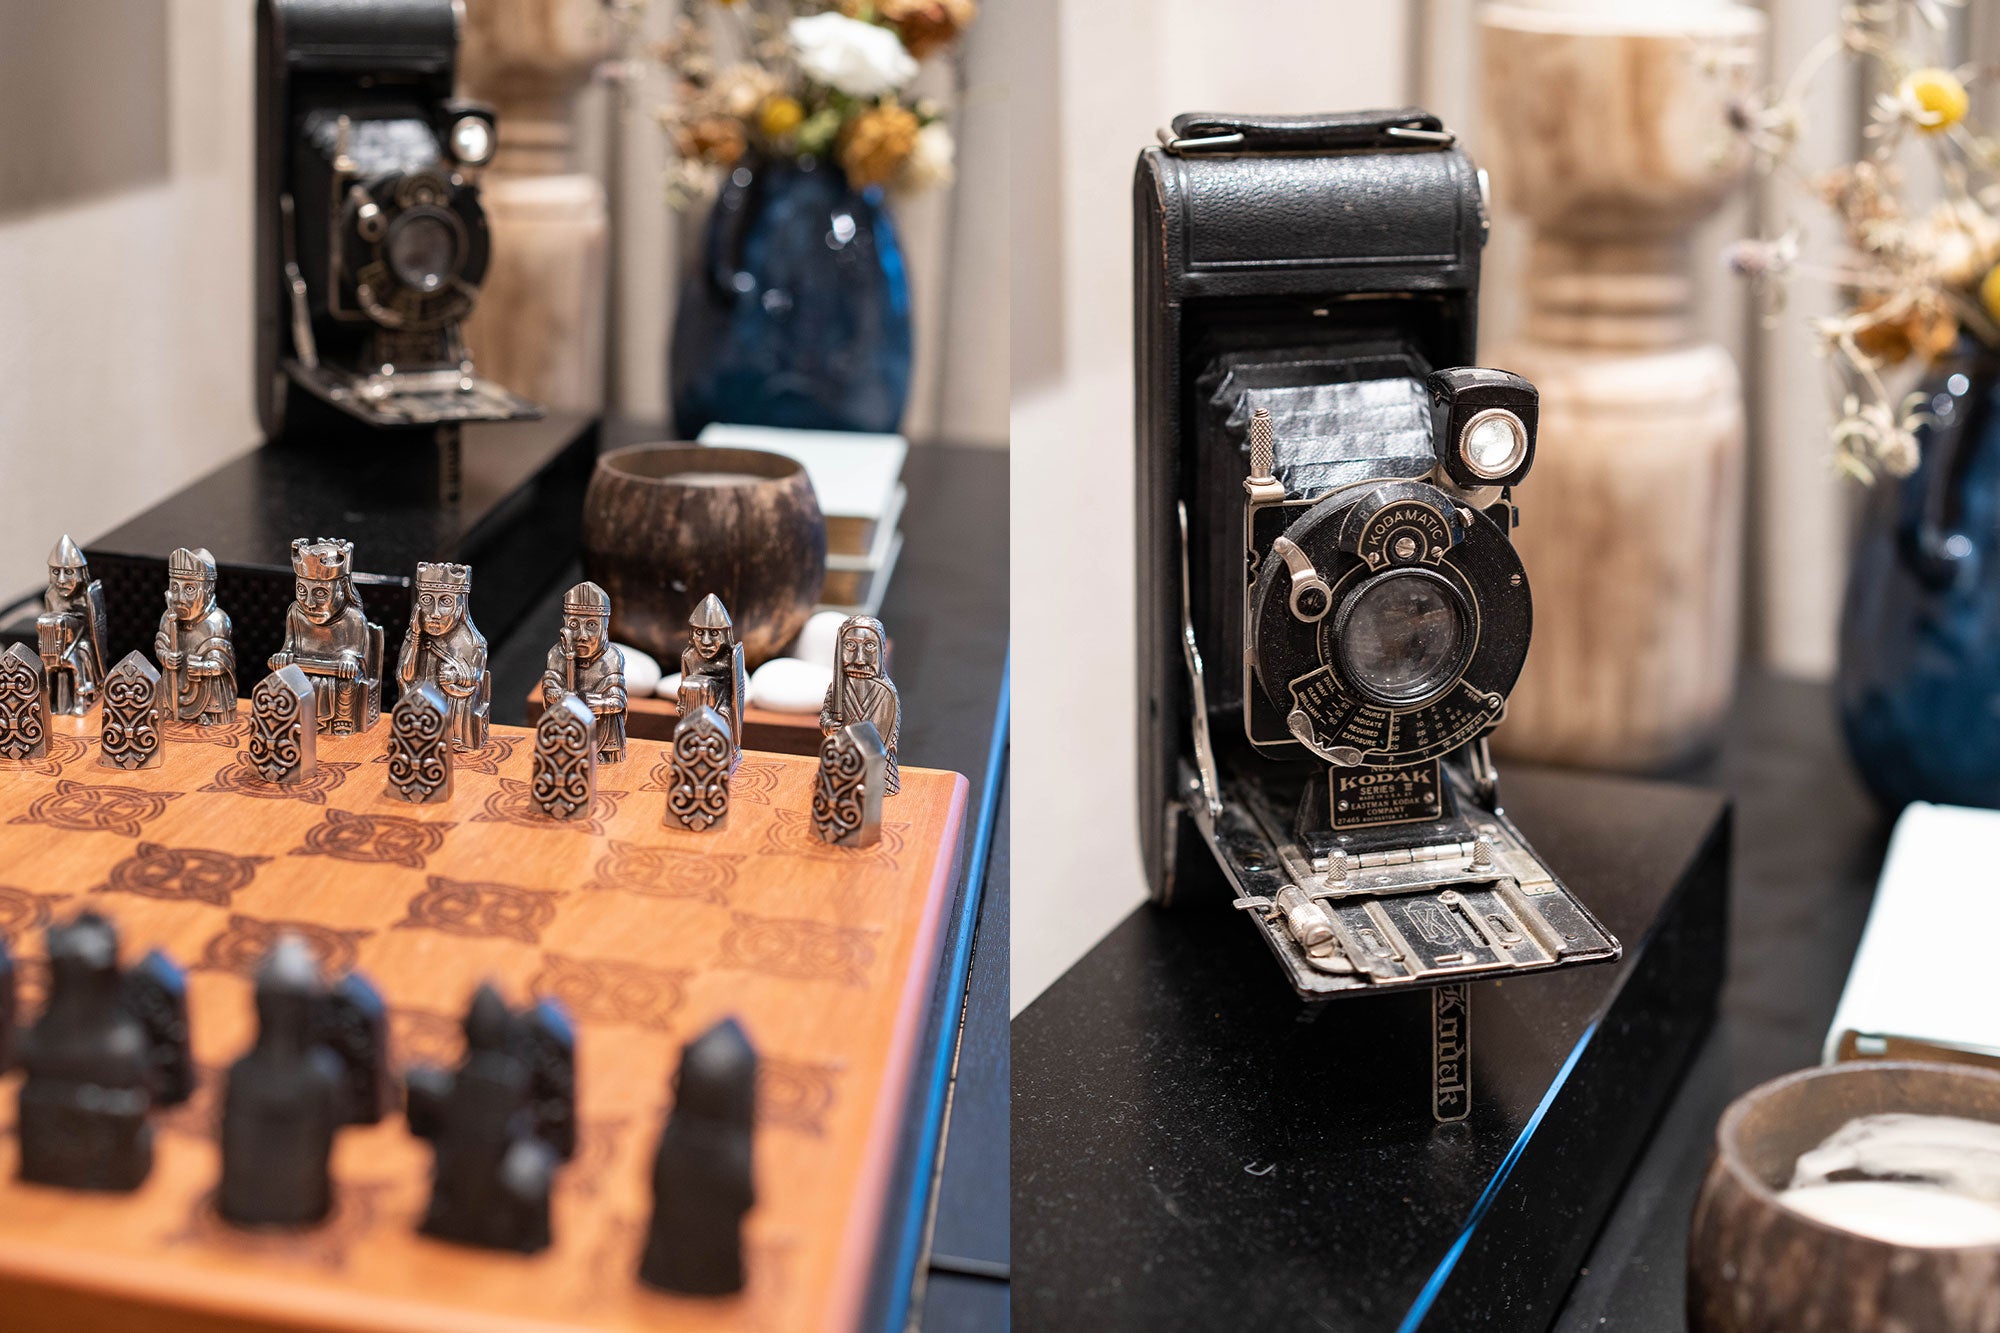 Retro film camera home display and chess set